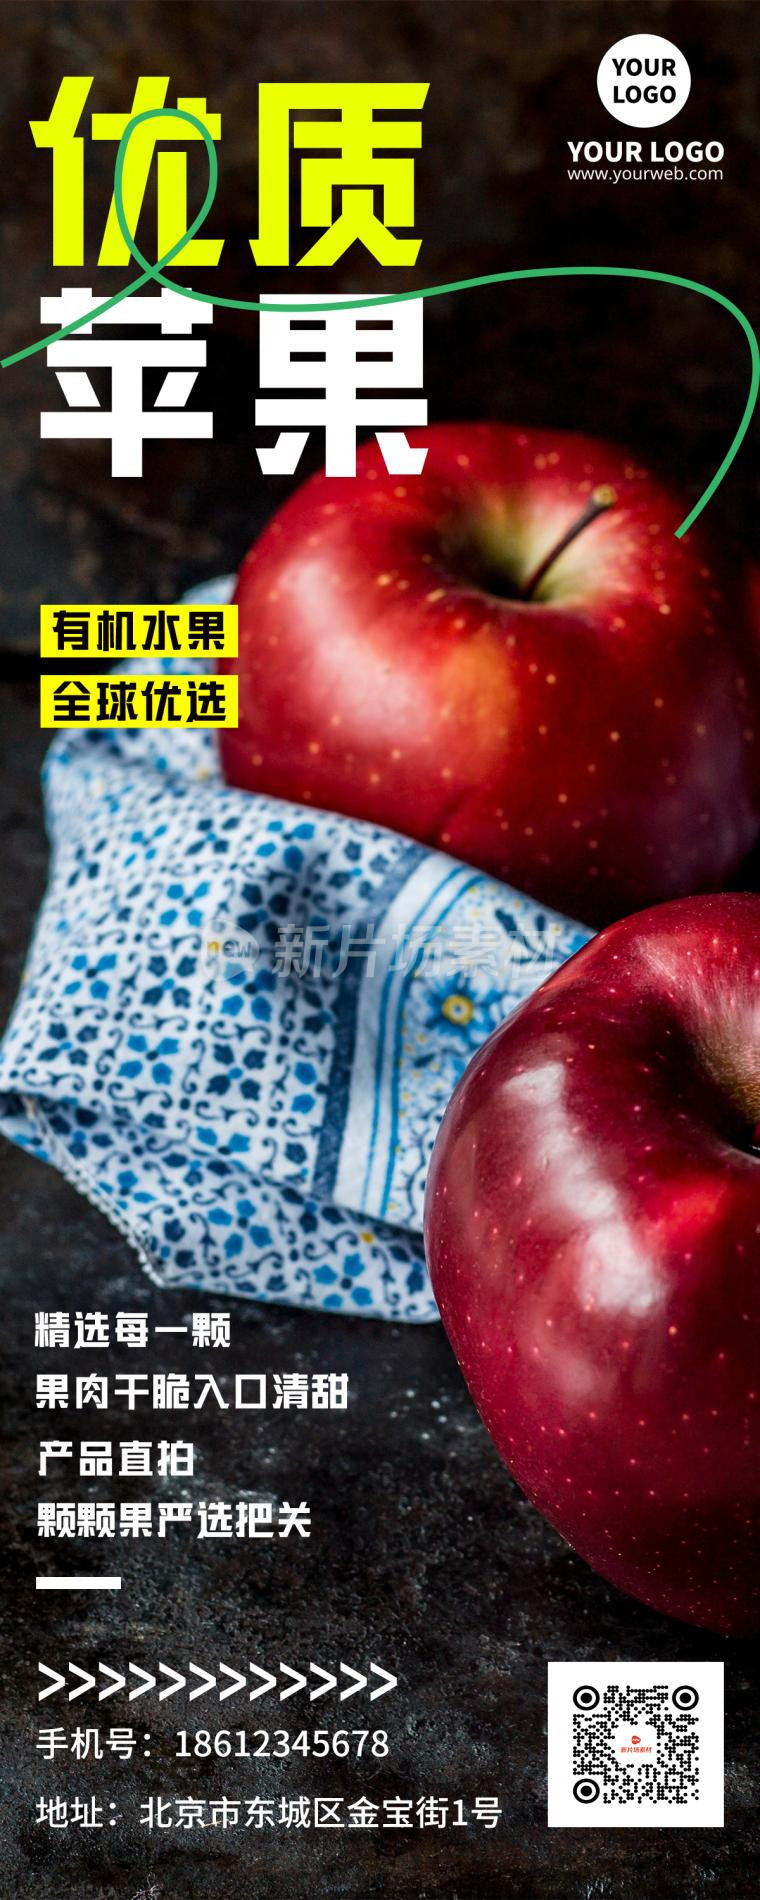 优质苹果促销简约海报长图